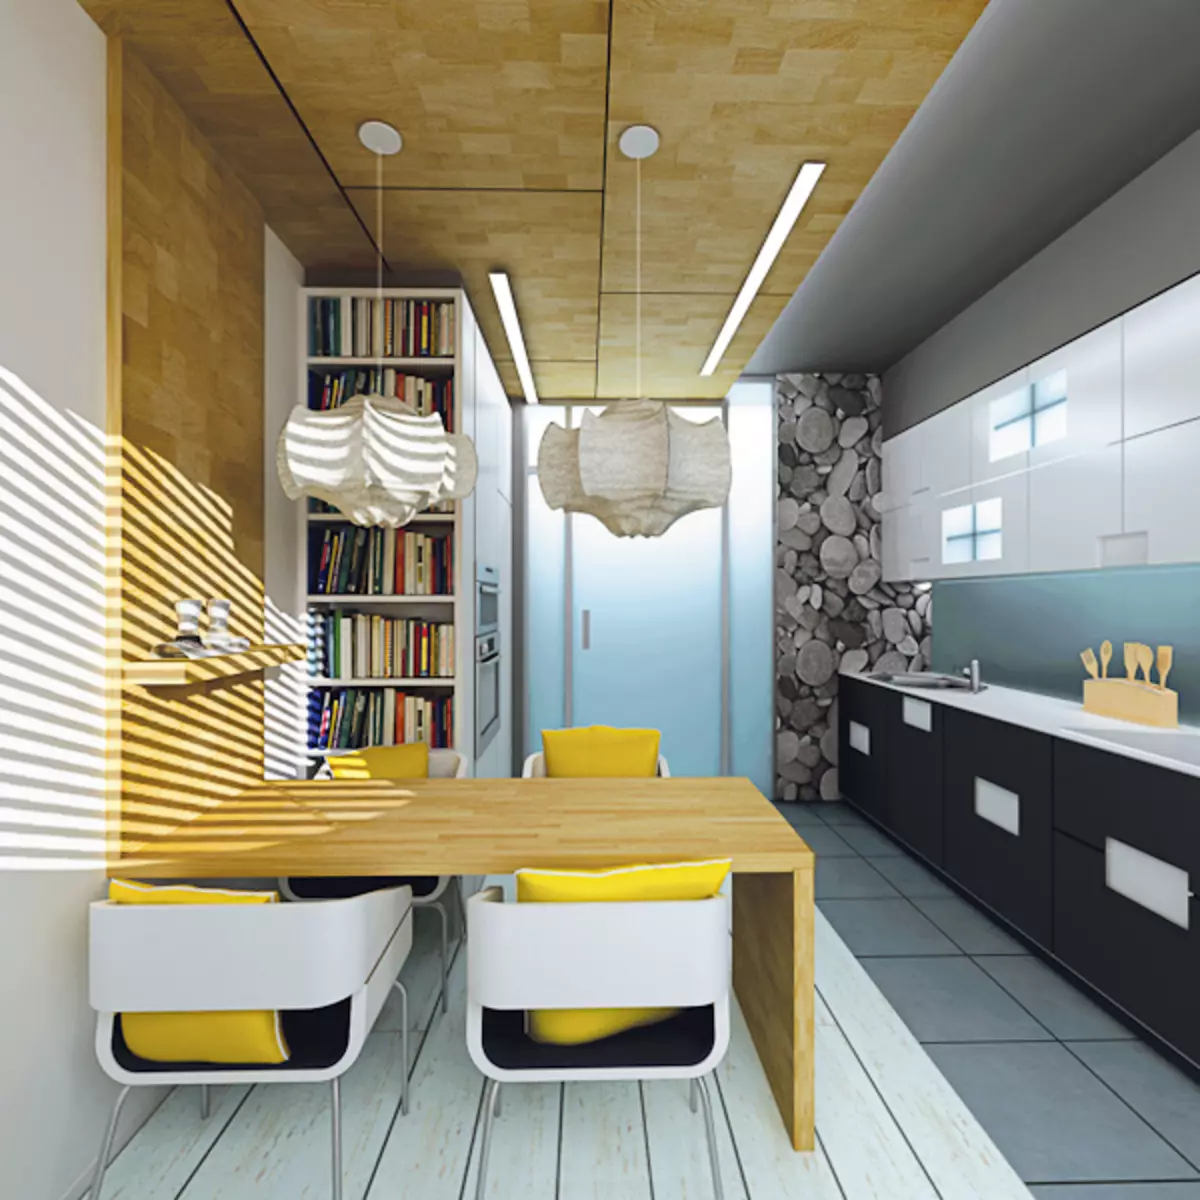 एसपीटी 61 श्रृंखला की एक आवासीय इमारत में चार डिजाइन परियोजनाएं अपार्टमेंट